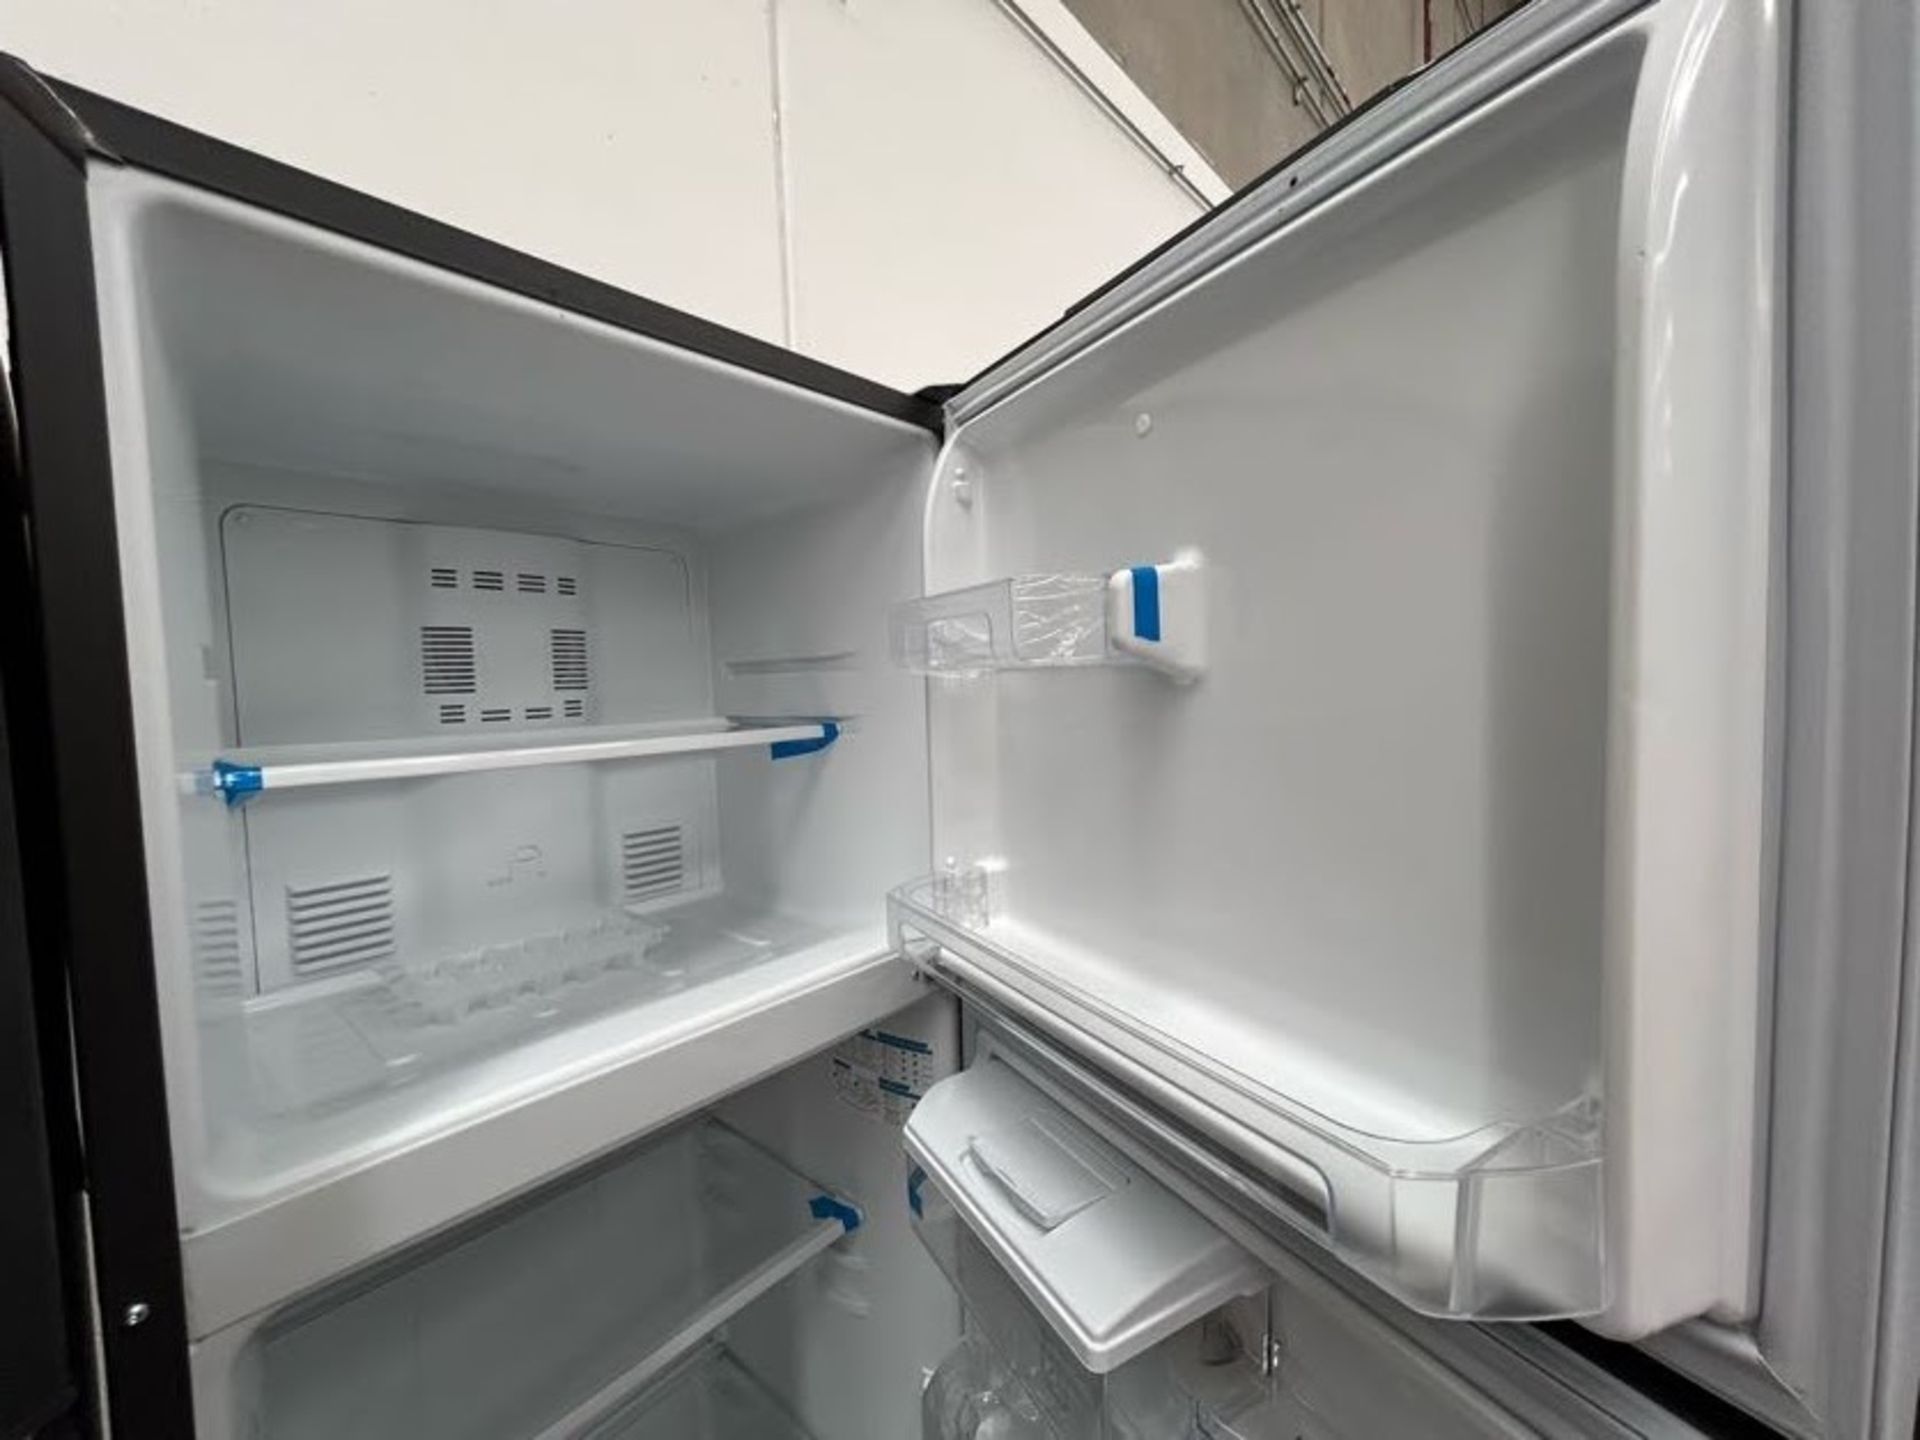 Lote de 2 Refrigeradores contiene: 1 Refrigerador con dispensador de agua Marca MABE, Modelo RMA300 - Image 4 of 8